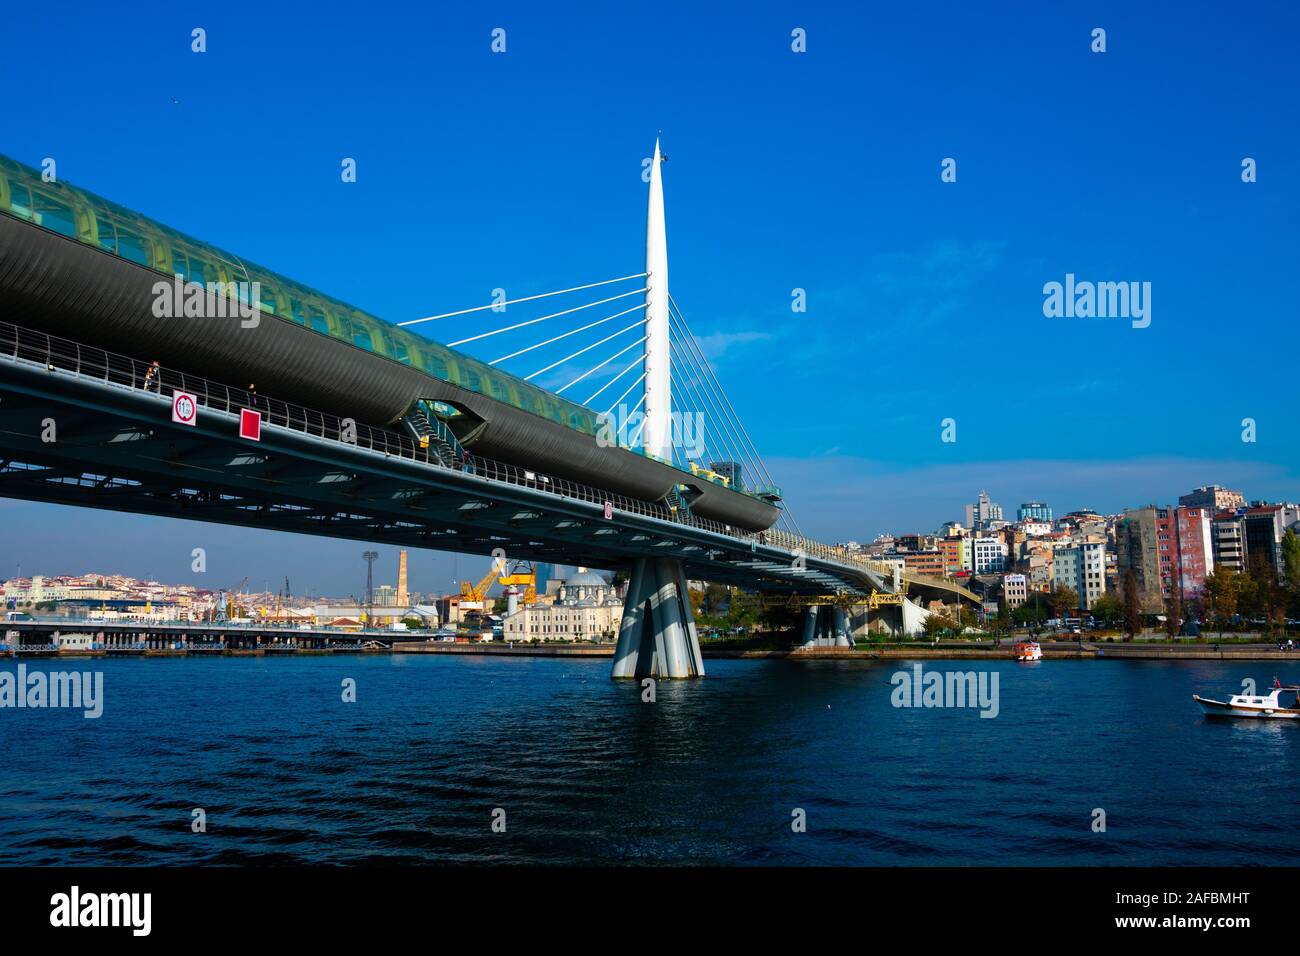 Istanbul, Turquie. 21 novembre, 2019. Métro Pont de Golden Horn (métro) Koprusu Halic, un pont à haubans le long de la ligne M2 du métro d'Istanbul Banque D'Images